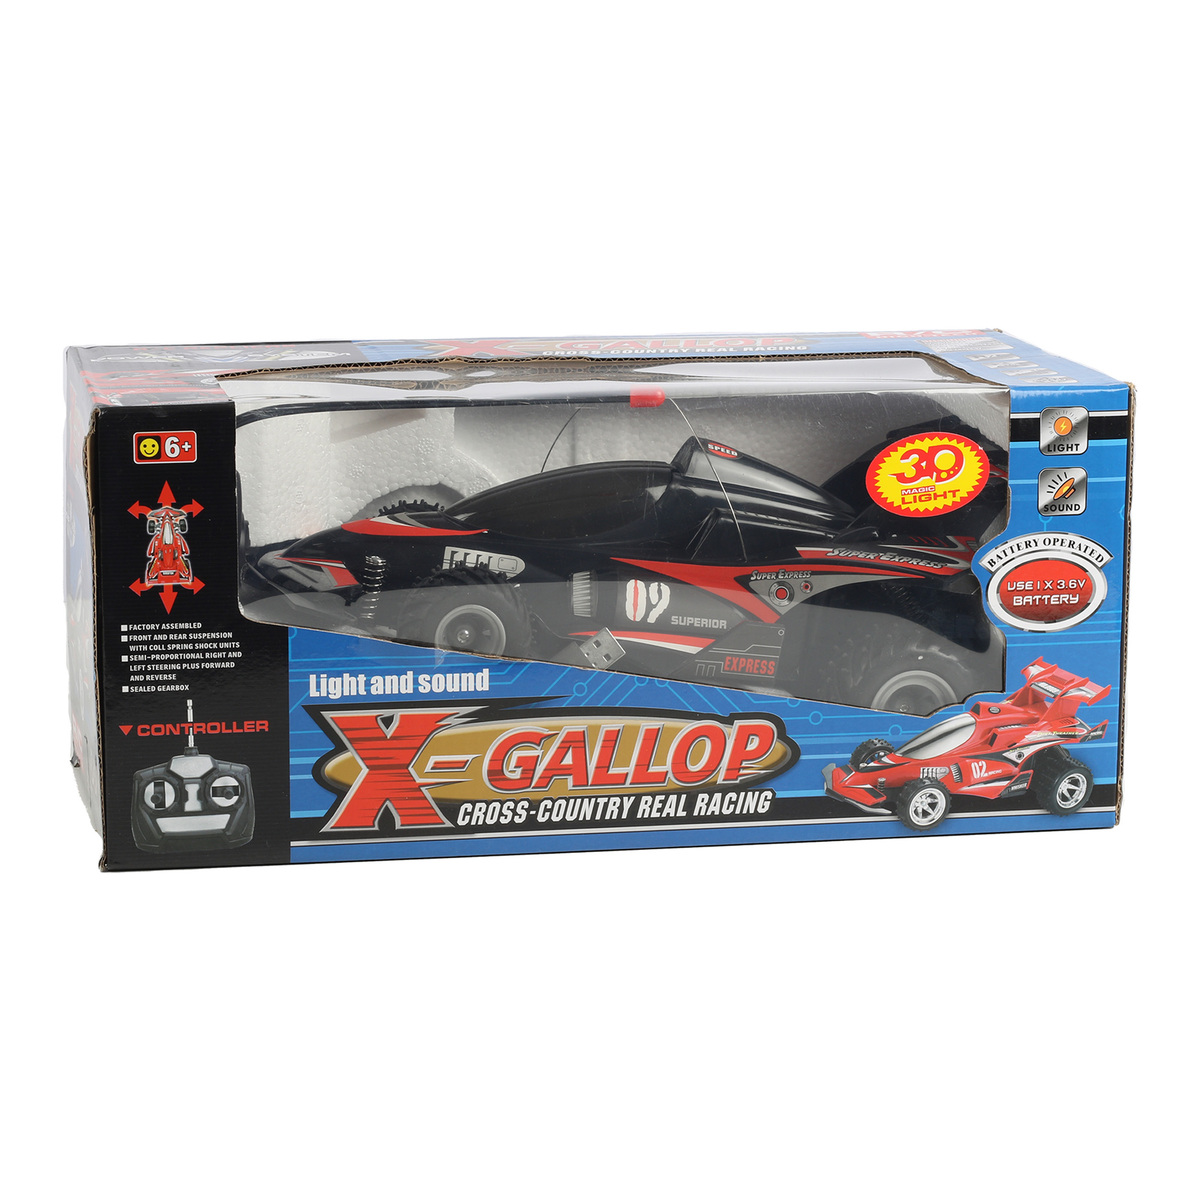 Skid Fusion Remote Control X-Gallop Light & Sound Car 0909